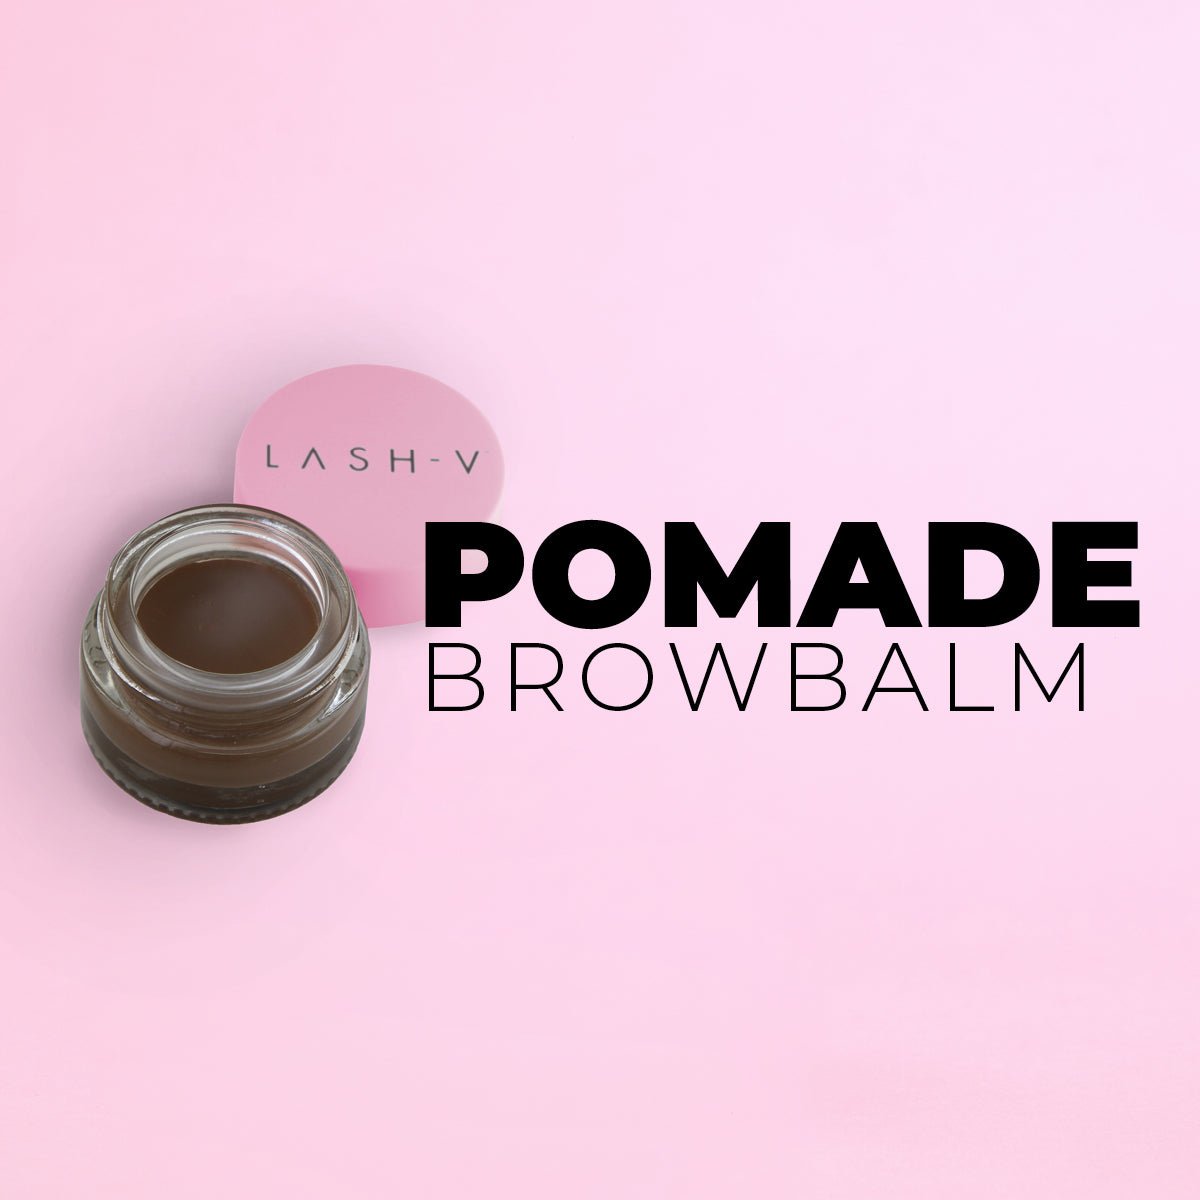 Pomade Brow Balm - LASH V